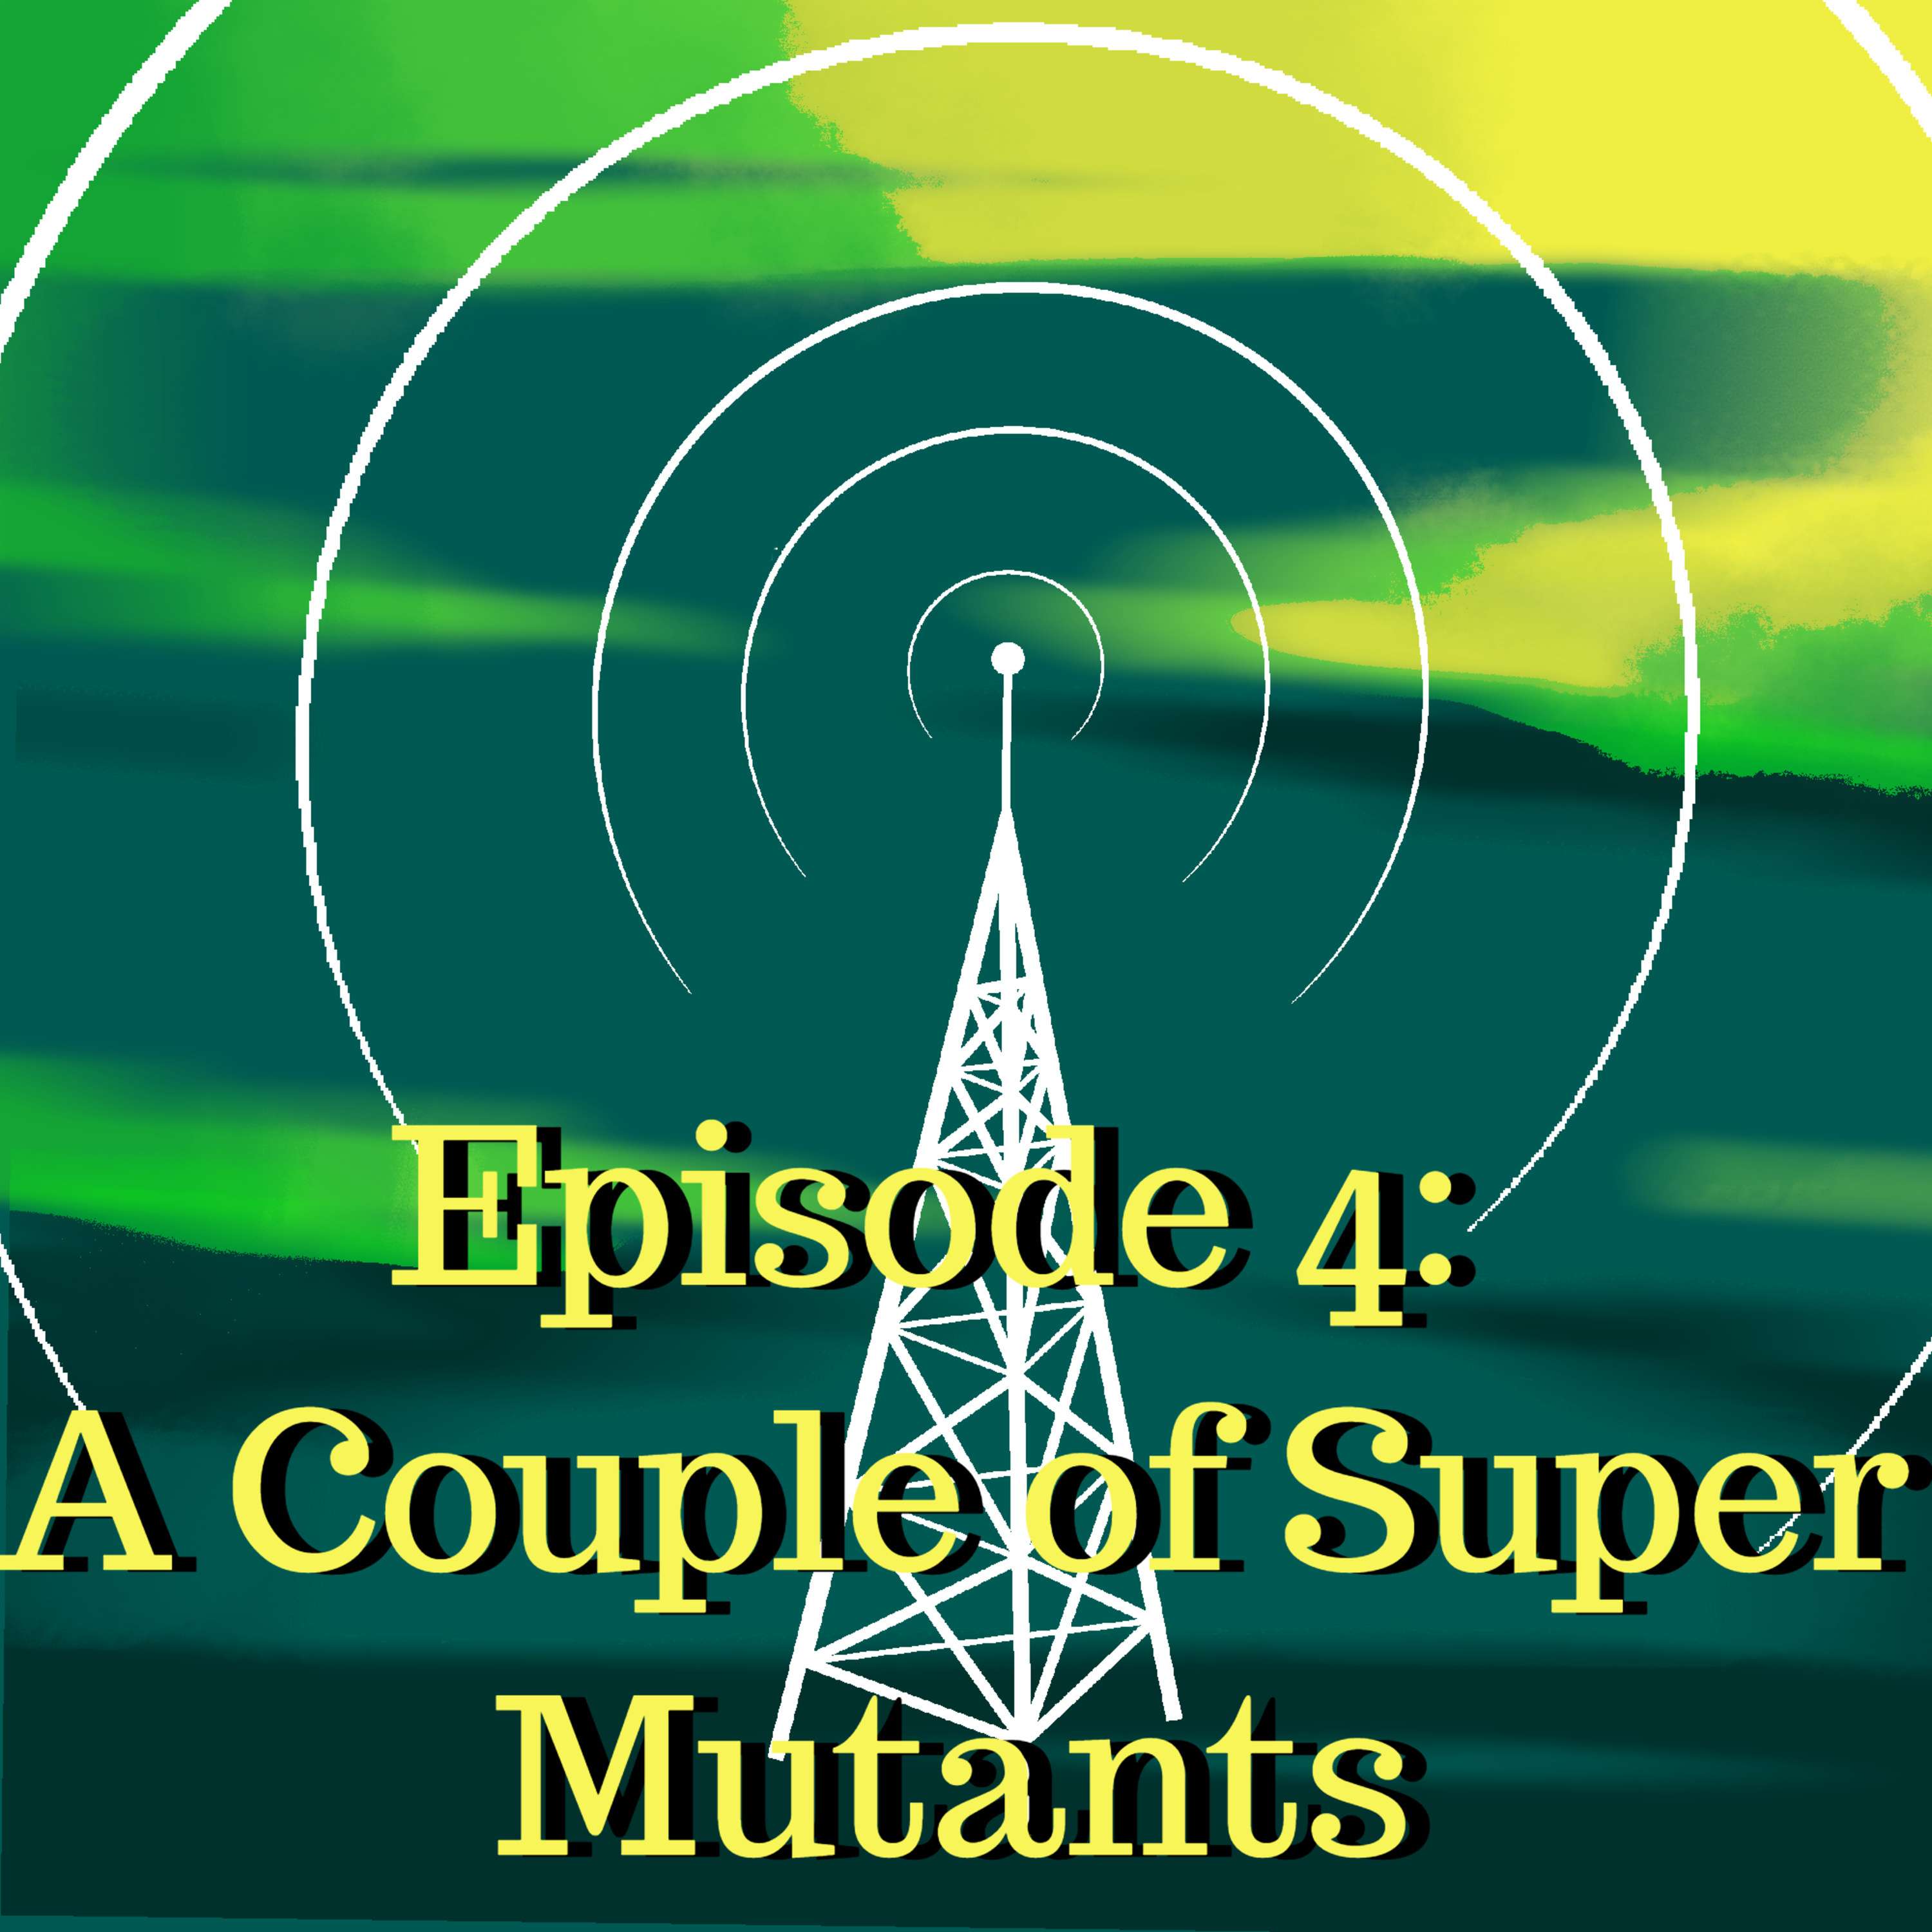 Episode 4: ”A Couple of Super Mutants”